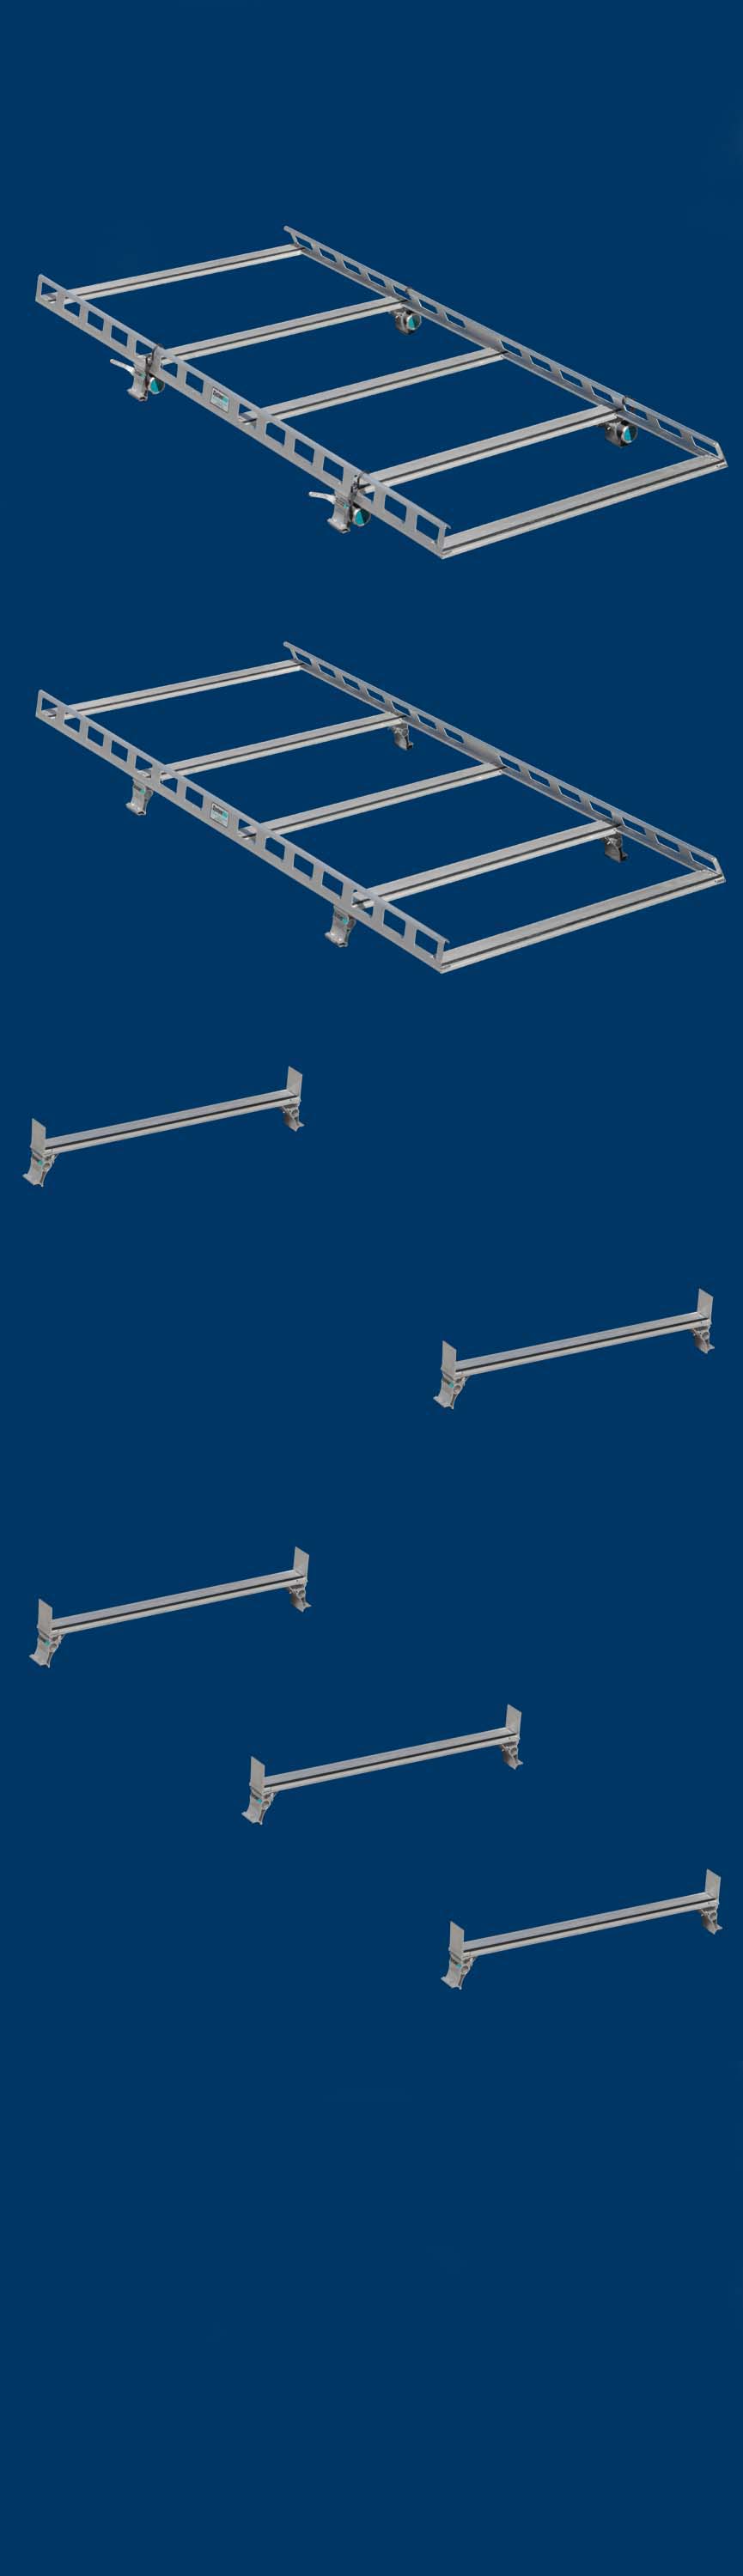 Van Ladder Racks - Overview